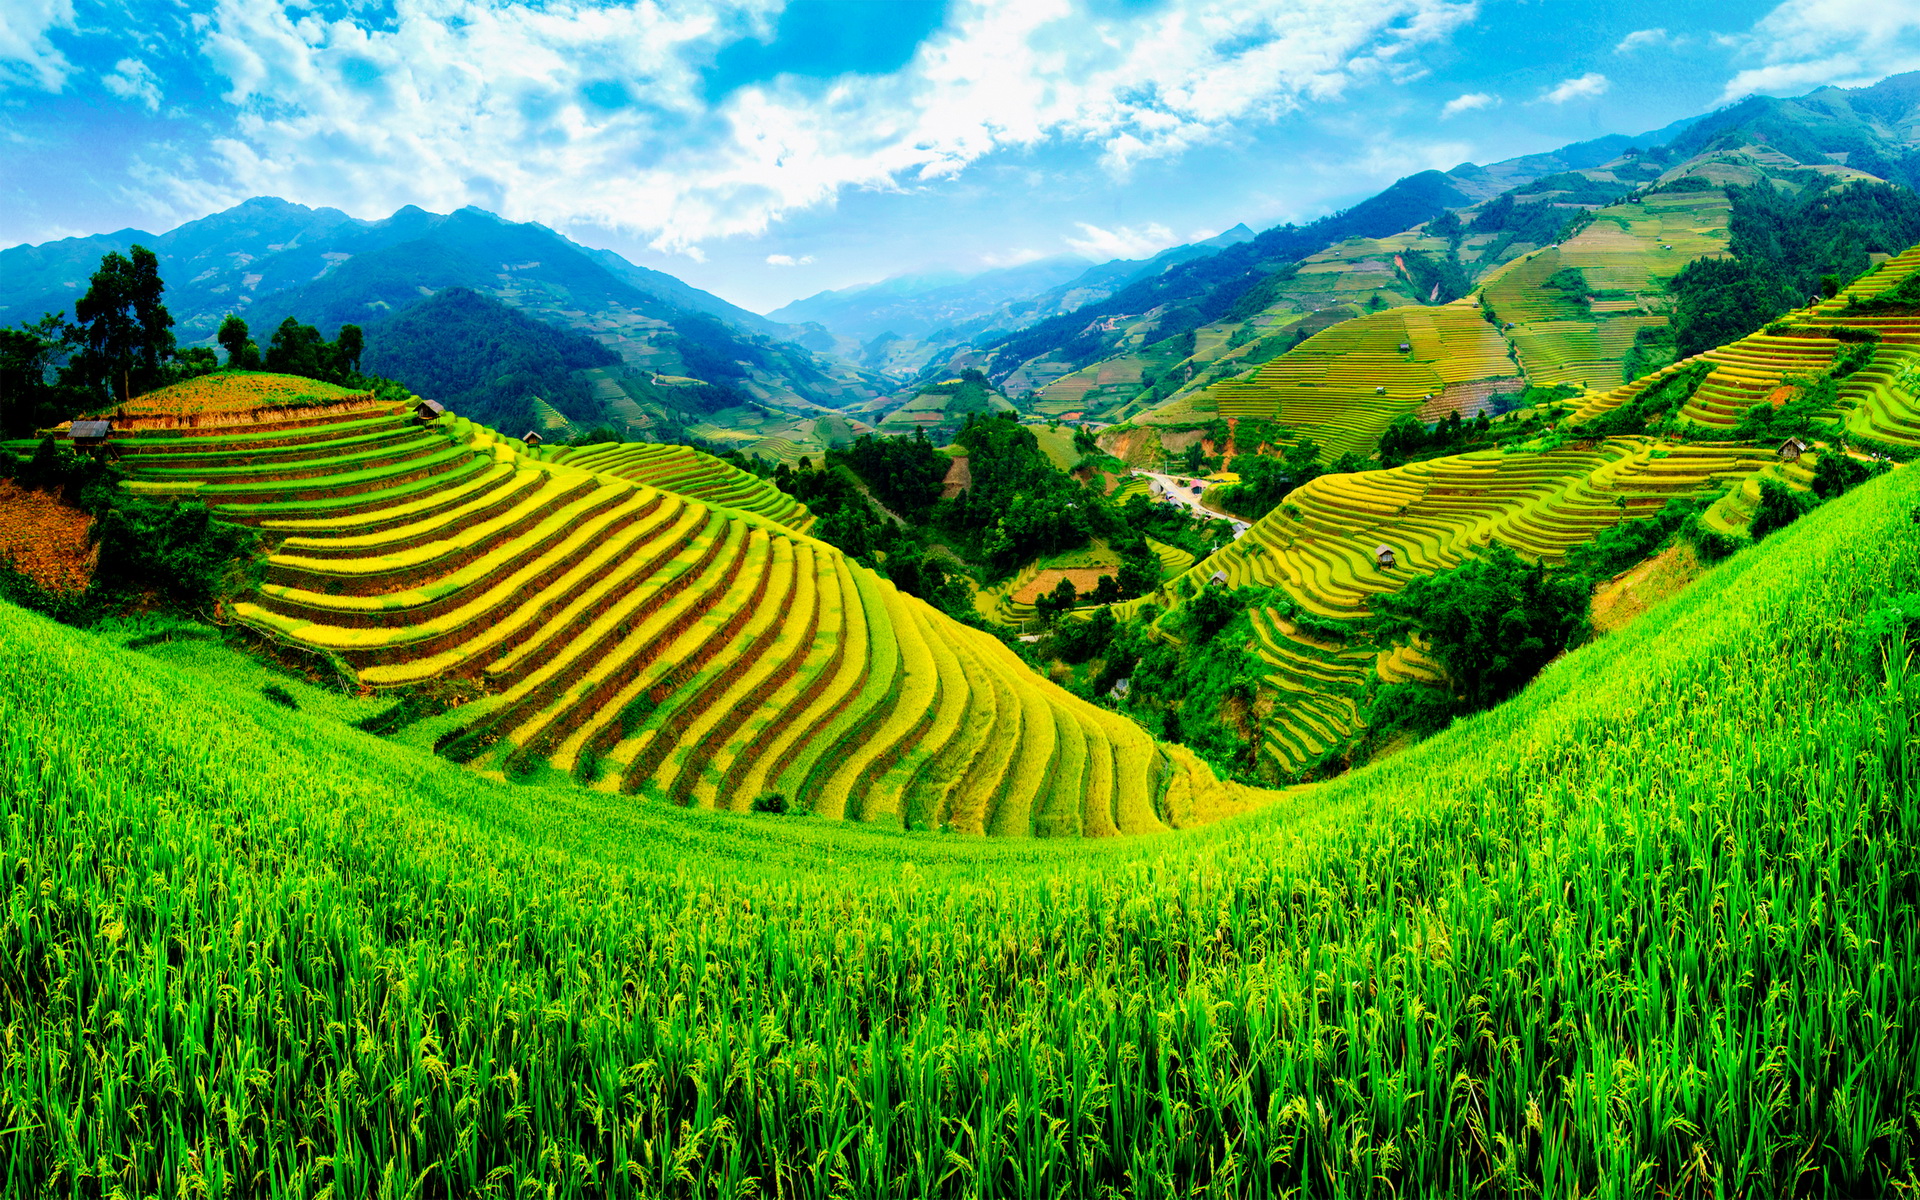 Phong cảnh (Landscape): Nếu bạn muốn trải nghiệm những cảnh đẹp thiên nhiên hùng vĩ của Việt Nam, hãy thưởng thức những hình ảnh khách nhau của mảnh đất này. Từ những núi non, khu rừng nguyên sinh, đến những bãi biển hoang sơ trải dài, đến những con sông bao la. Thật tuyệt vời khi thưởng thức những phong cảnh đẹp nhất của Việt Nam. Đừng bỏ lỡ trải nghiệm này!